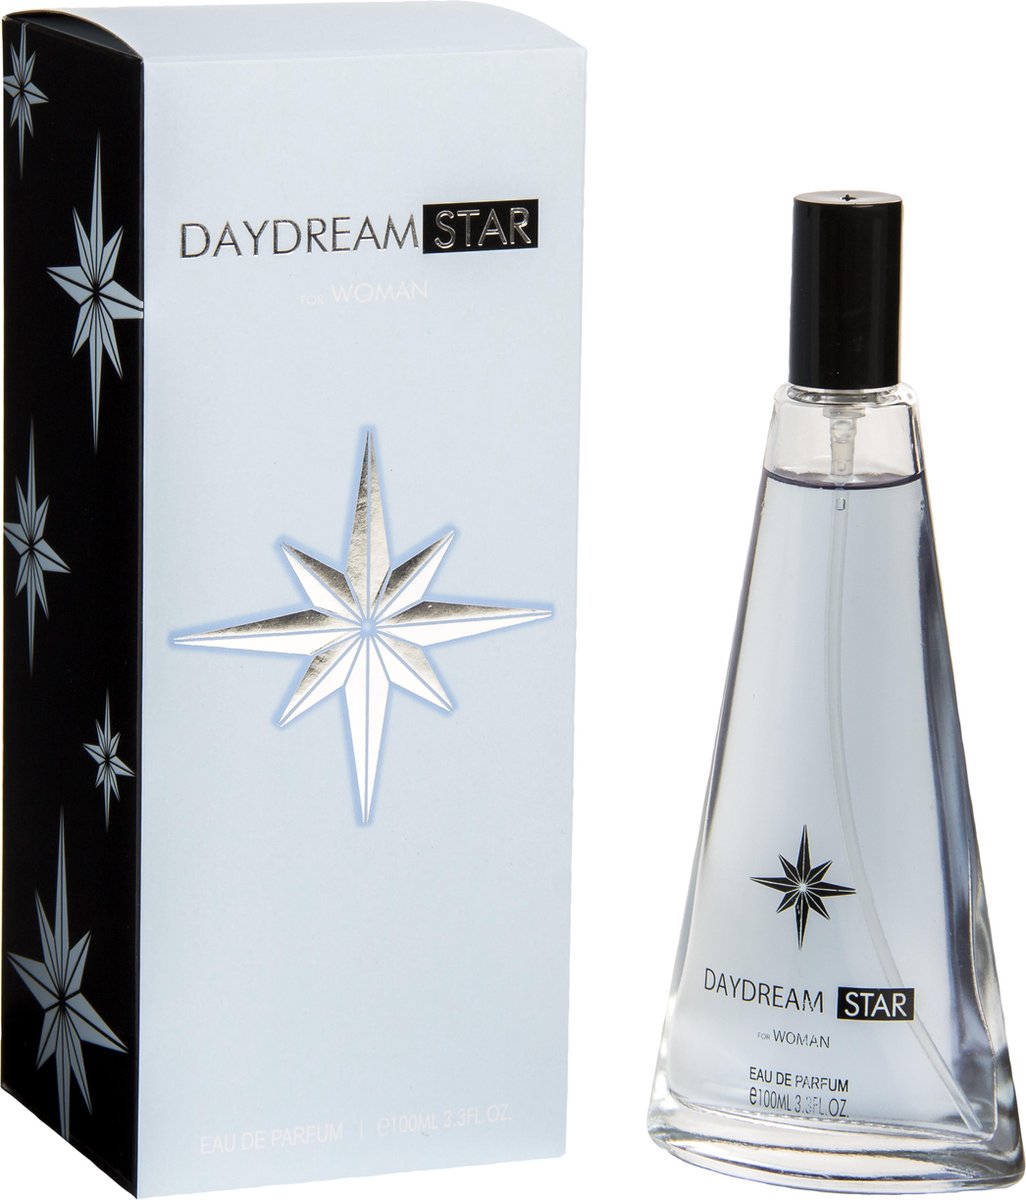 PSC-DAYDREAM STAR-100ml Eau de Parfum